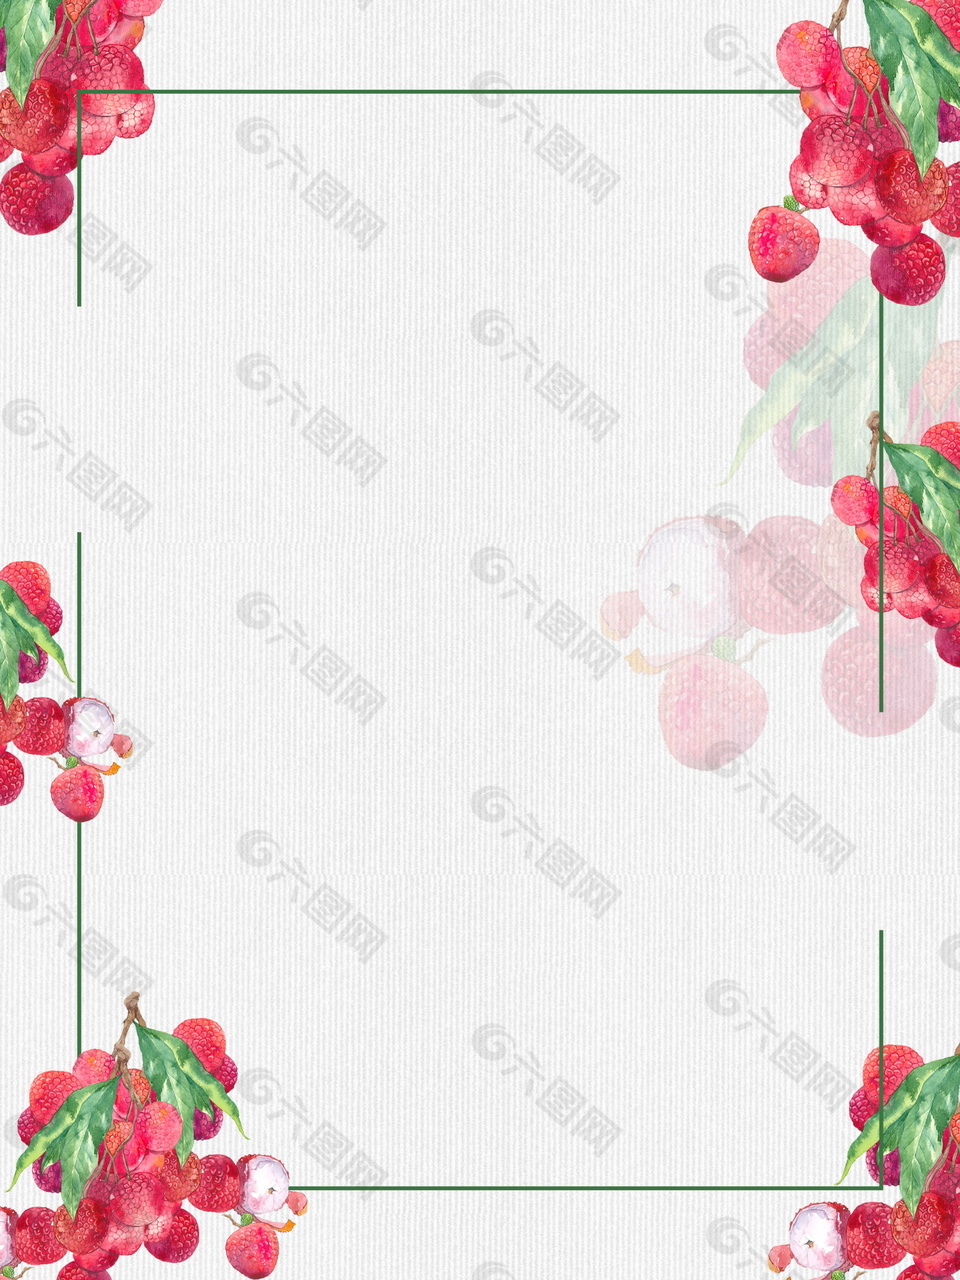 彩绘红荔枝装饰边框背景设计